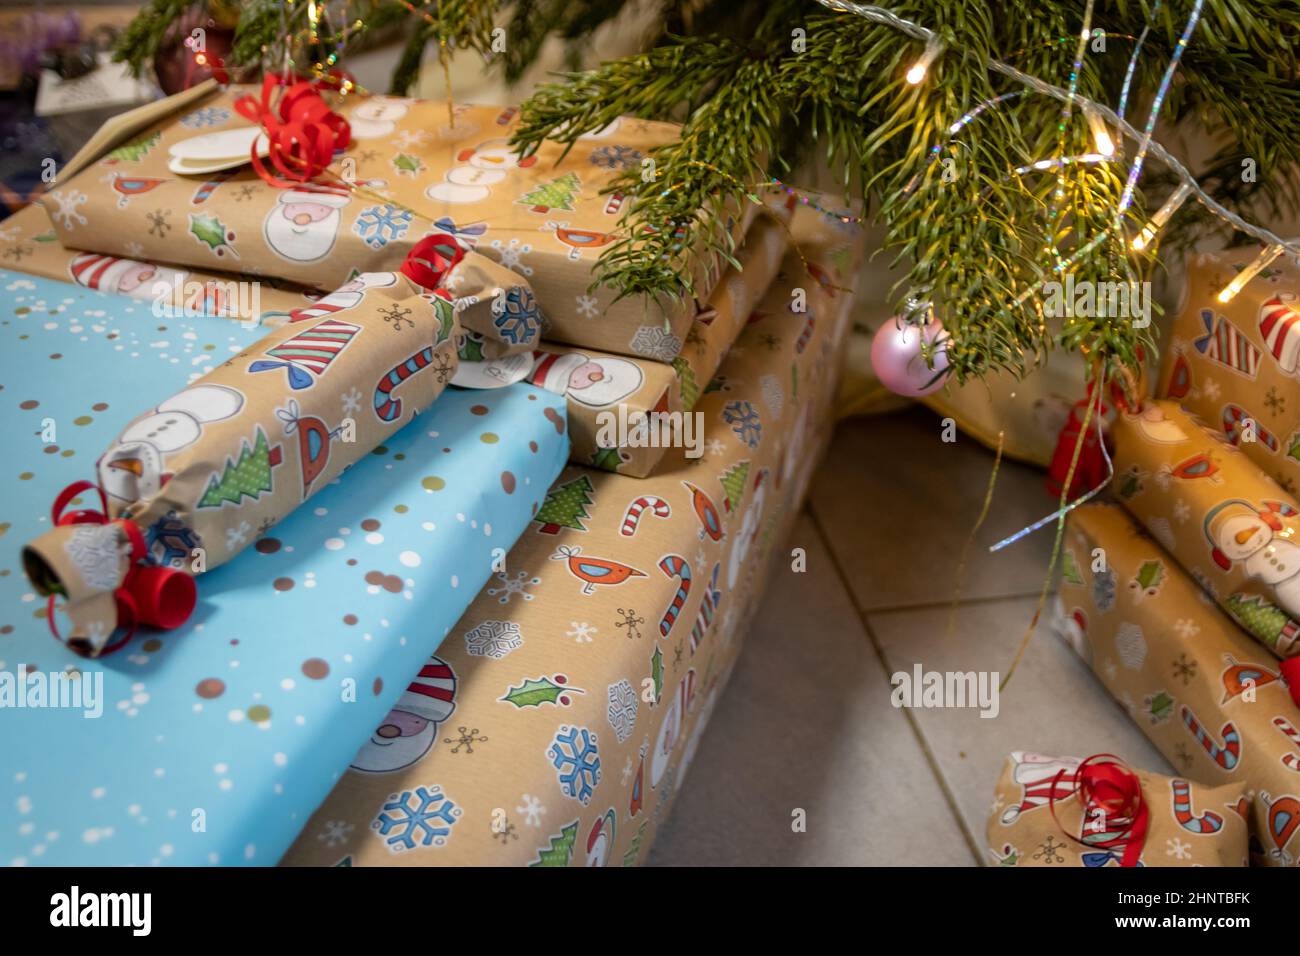 Cadeaux de Noël et cadeaux de Noël emballés sous l'arbre de Noël montrent un événement décoratif de unboxing avec célébration traditionnelle de la saison d'hiver faite à la main pour la beauté étincelante des yeux des enfants Banque D'Images